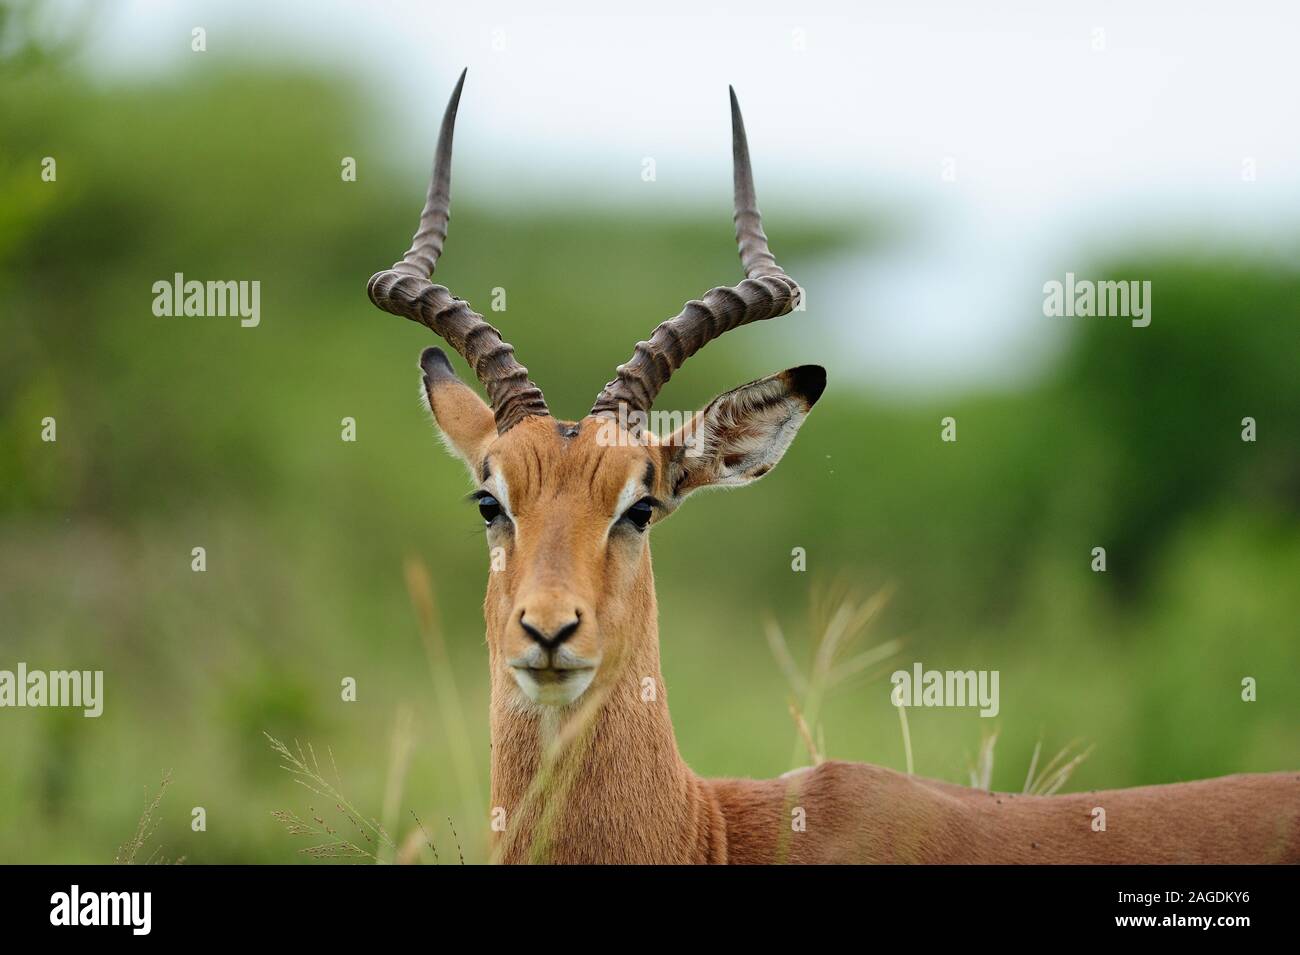 Selektive Aufnahme eines wunderschönen Impalas, aufgenommen im Afrikanischer Dschungel Stockfoto